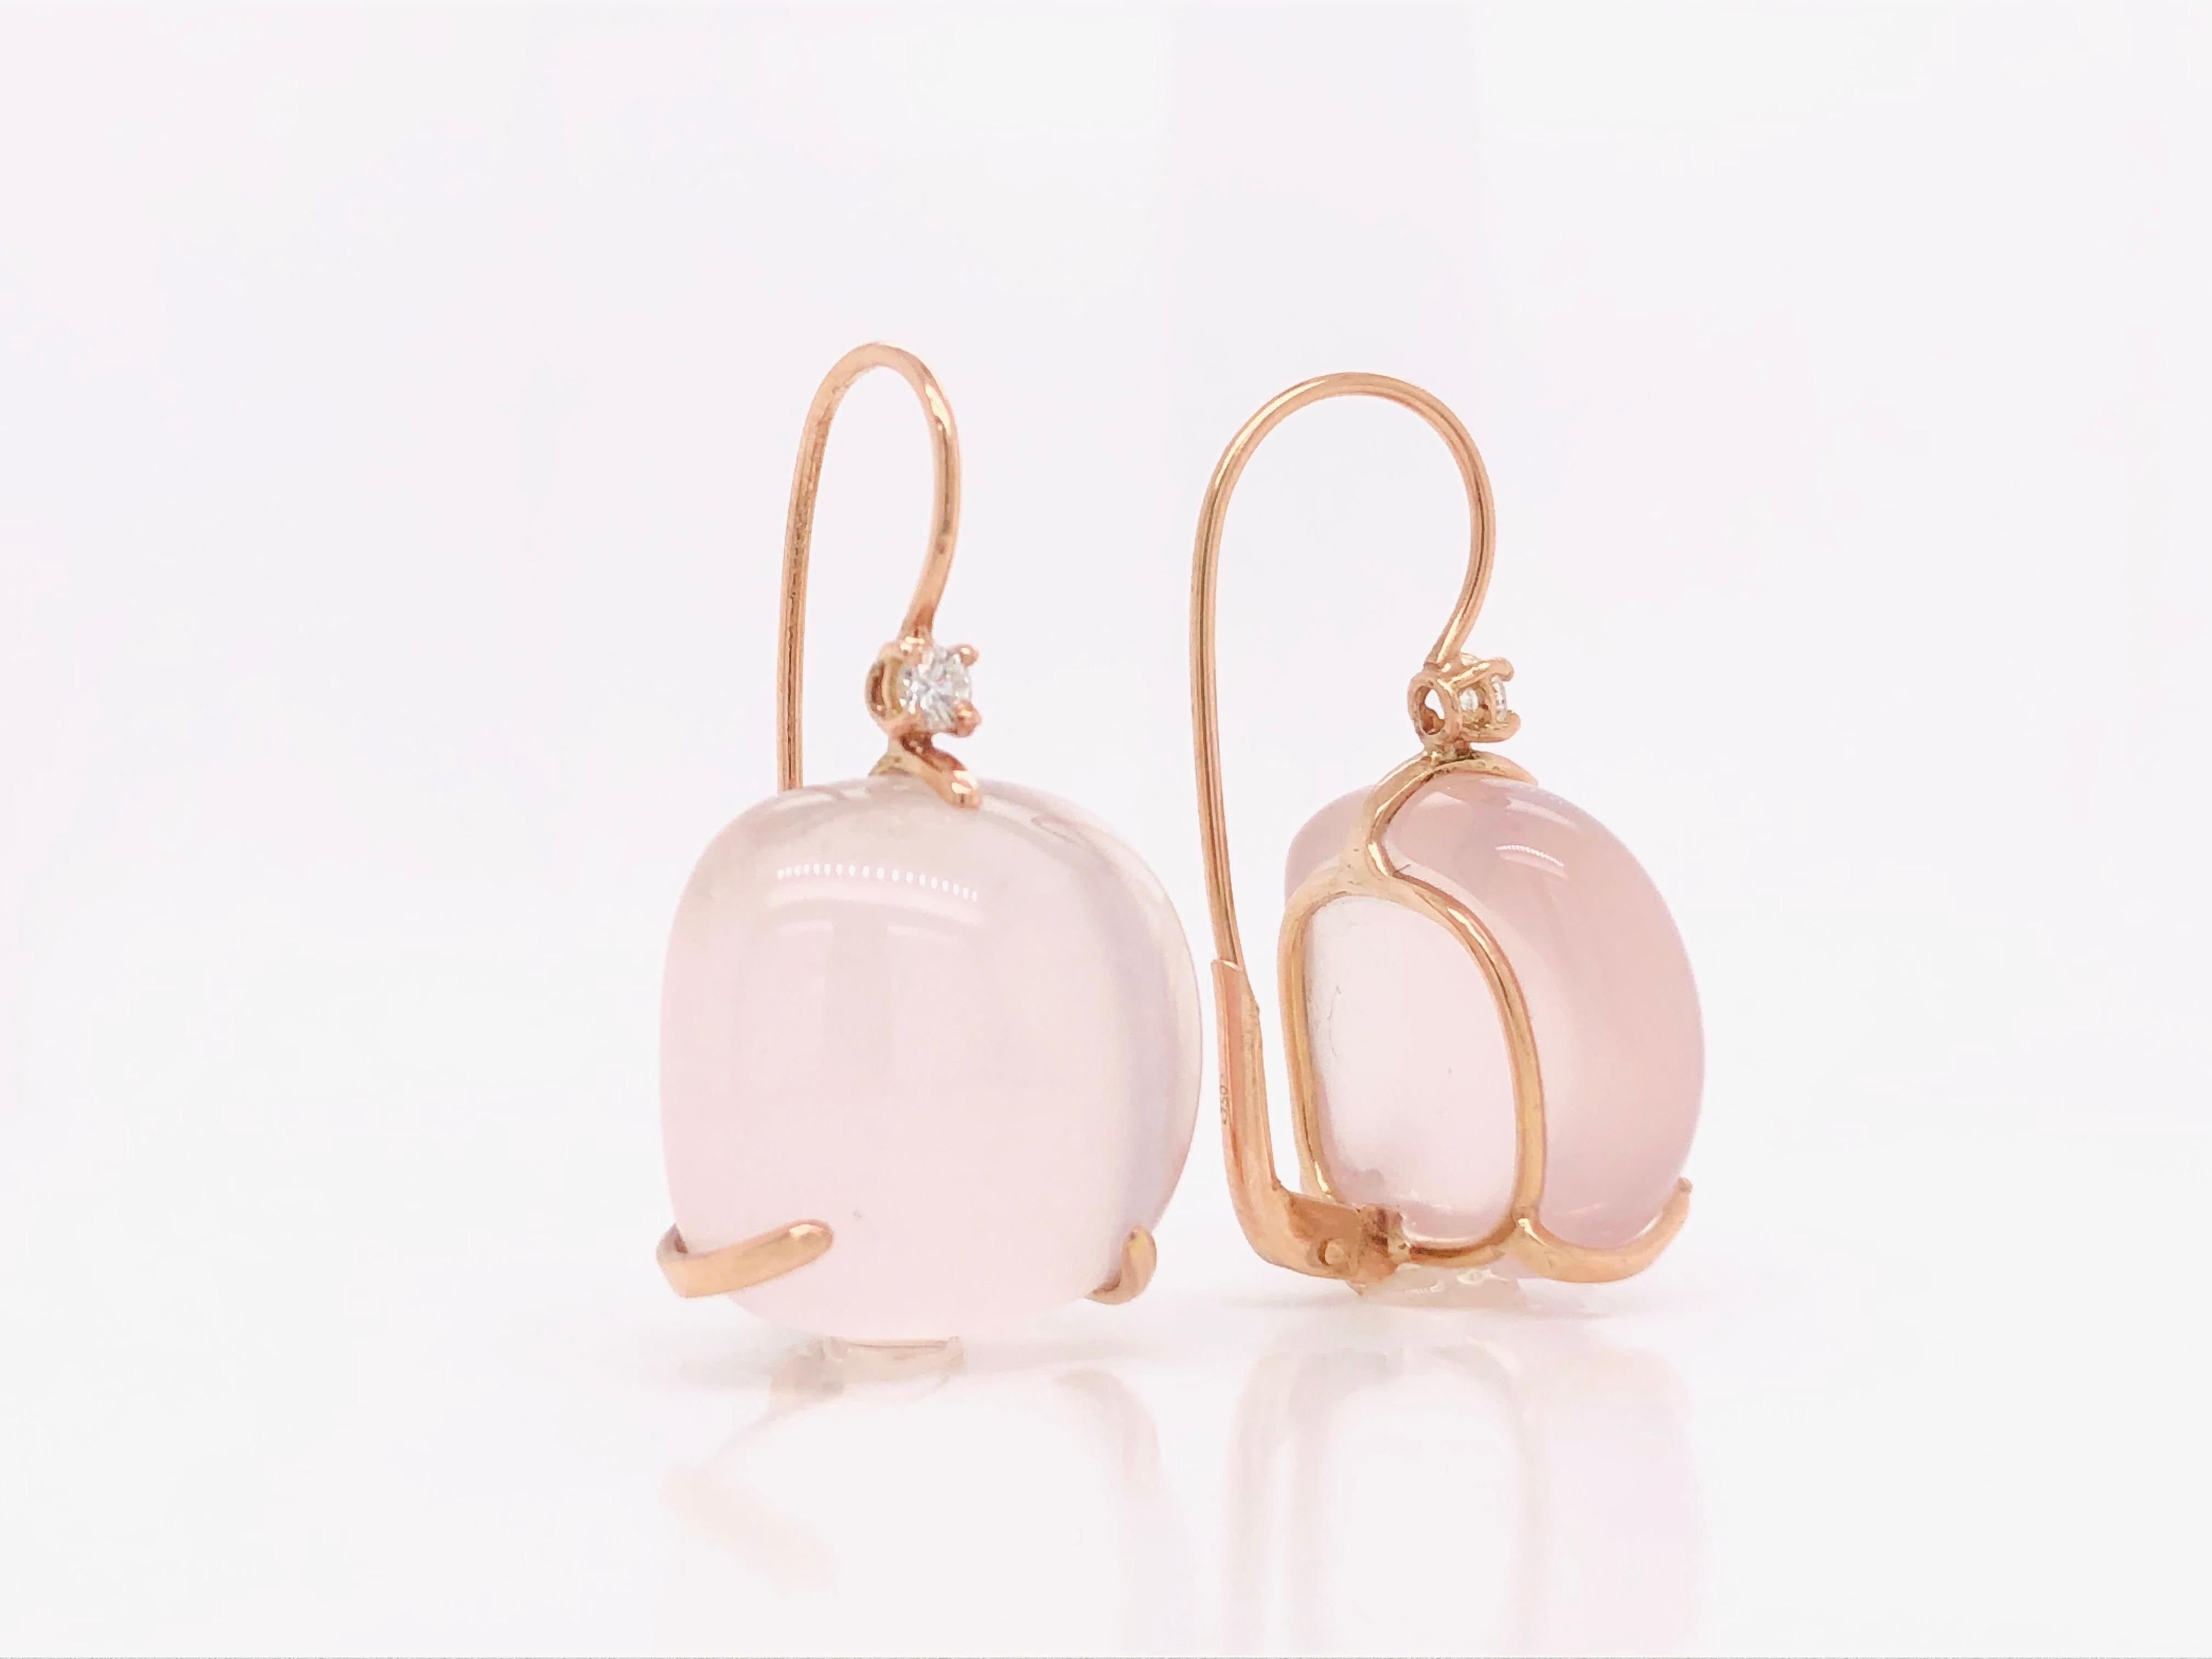 Rosenquarz-Ohrringe mit Diamanten auf 18 Karat Roségold sind der Inbegriff von Eleganz und Weiblichkeit. Mit zwei wunderschönen rosa Quarzsteinen und zwei funkelnden Diamanten von je 0,14 Karat sind diese Ohrringe die perfekte Wahl für alle, die ein